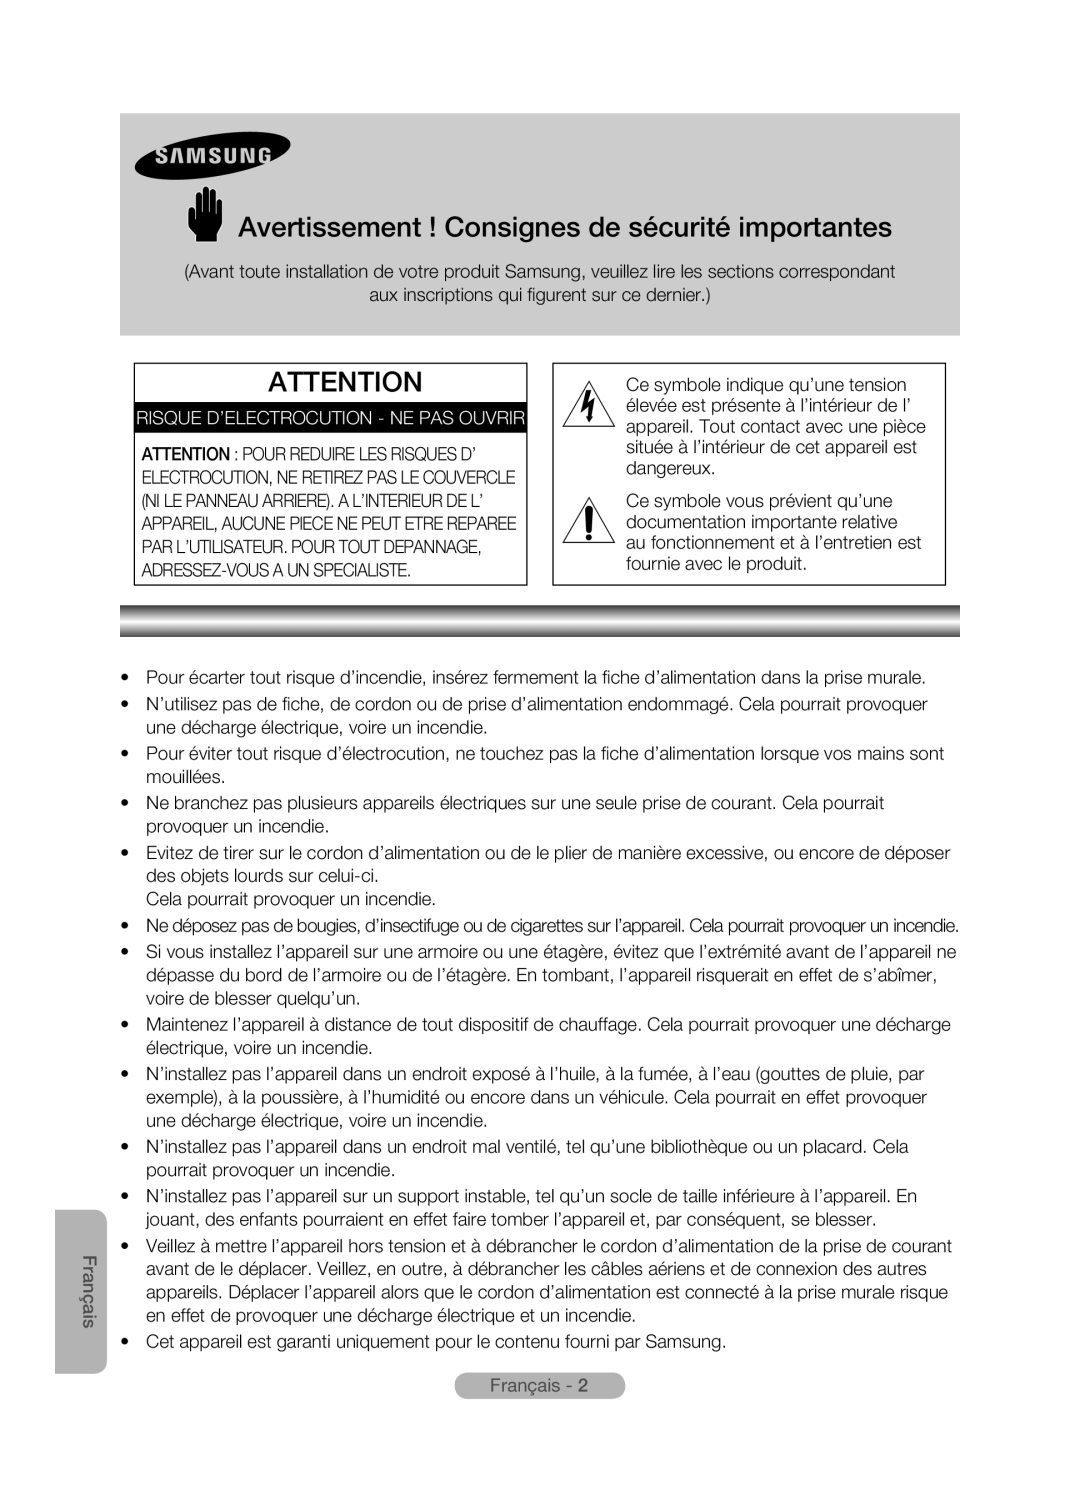 Samsung MR-16SB2 manual Avertissement ! Consignes de sécurité importantes, Risque D’Electrocution - Ne Pas Ouvrir, Français 